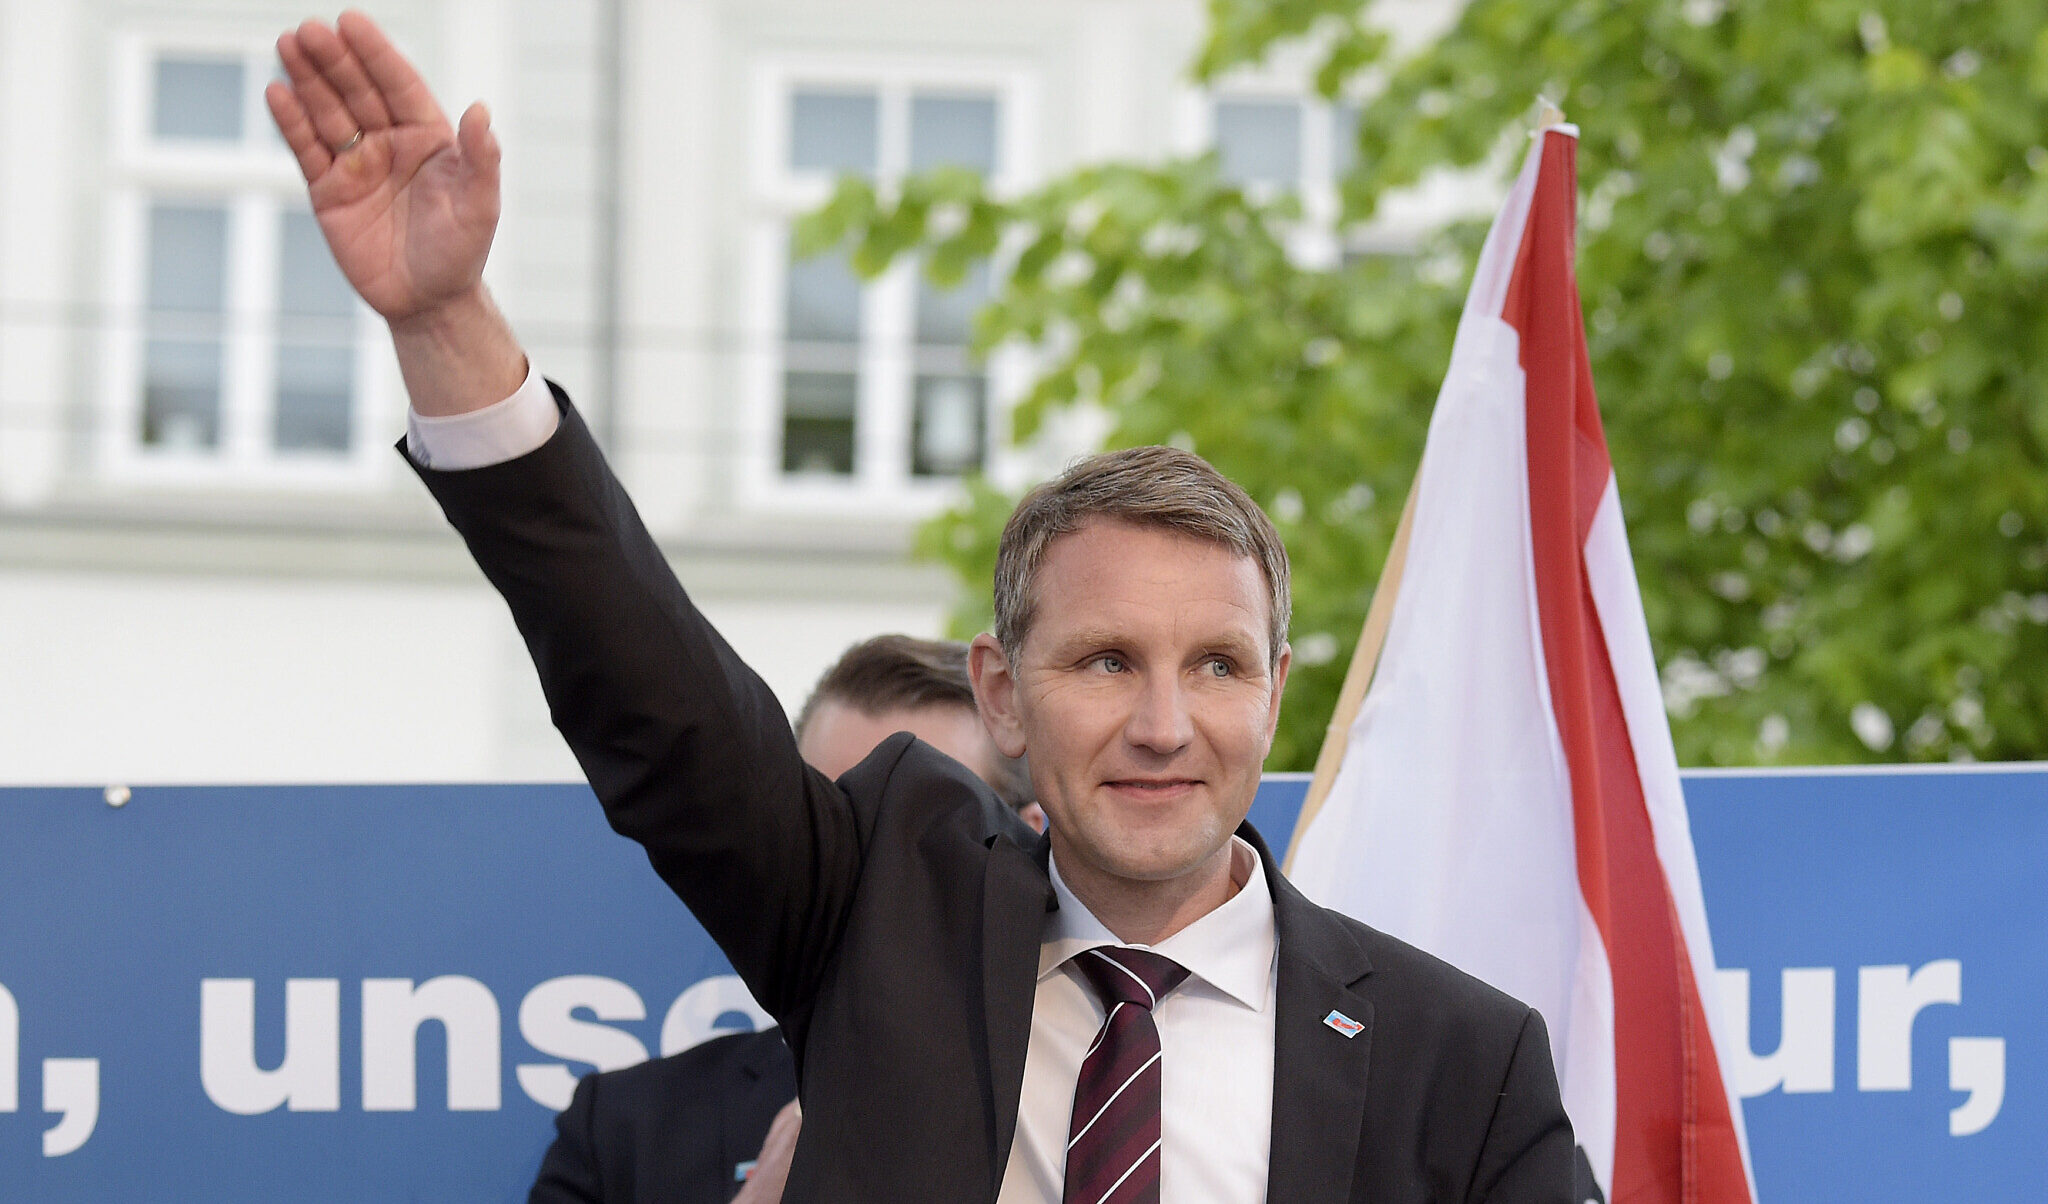 Germania, esponente del partito di estrema destra AfD multato per aver usato uno slogan nazista